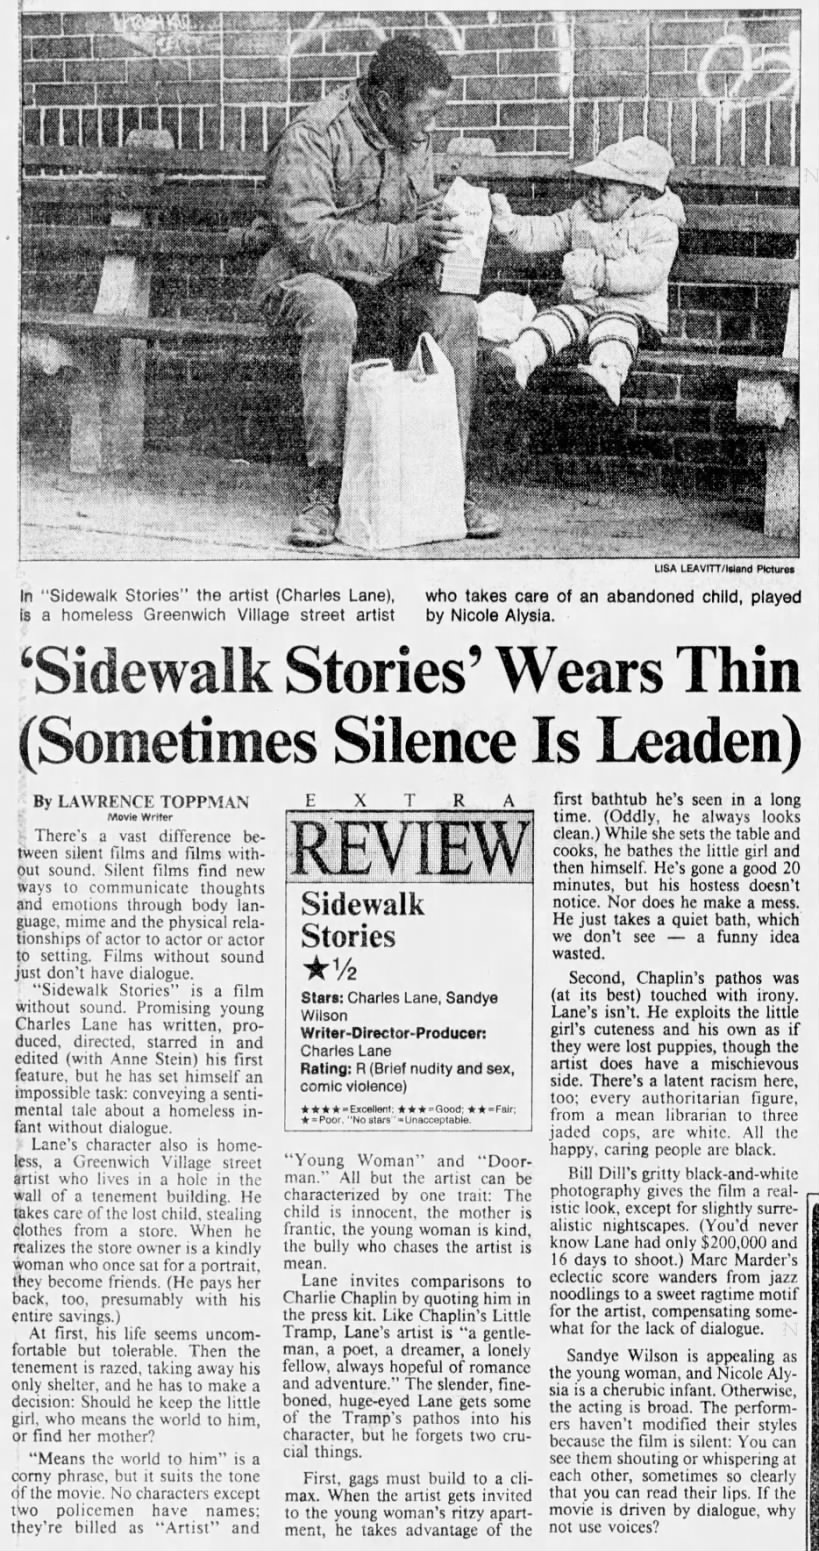 Sidewalk Stories*